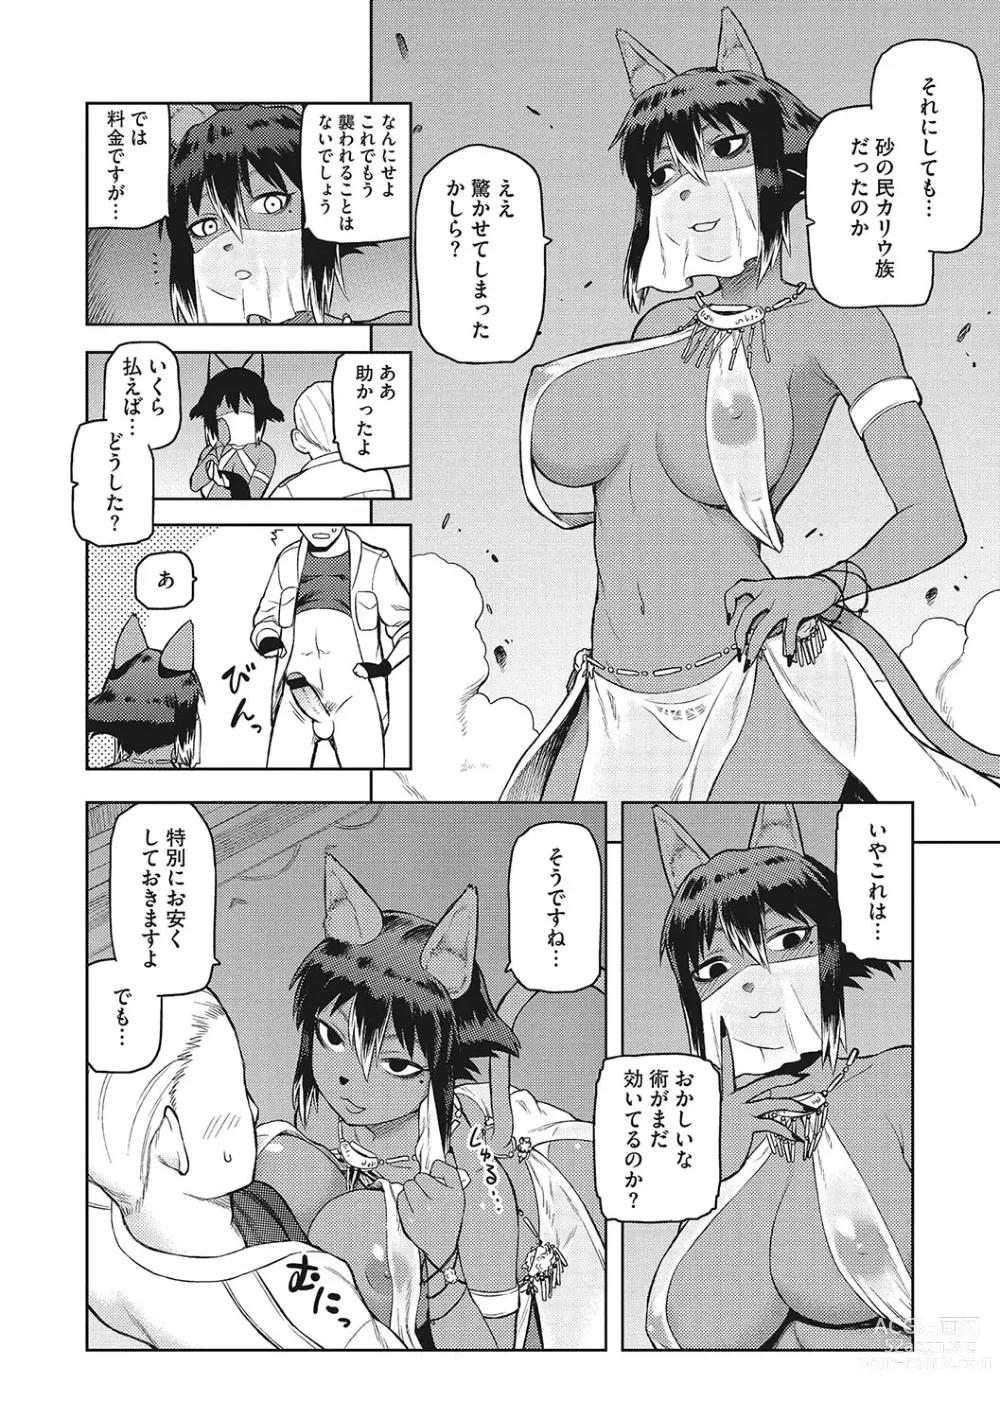 Page 203 of manga I.SyuWa.Karn Alph Lyla